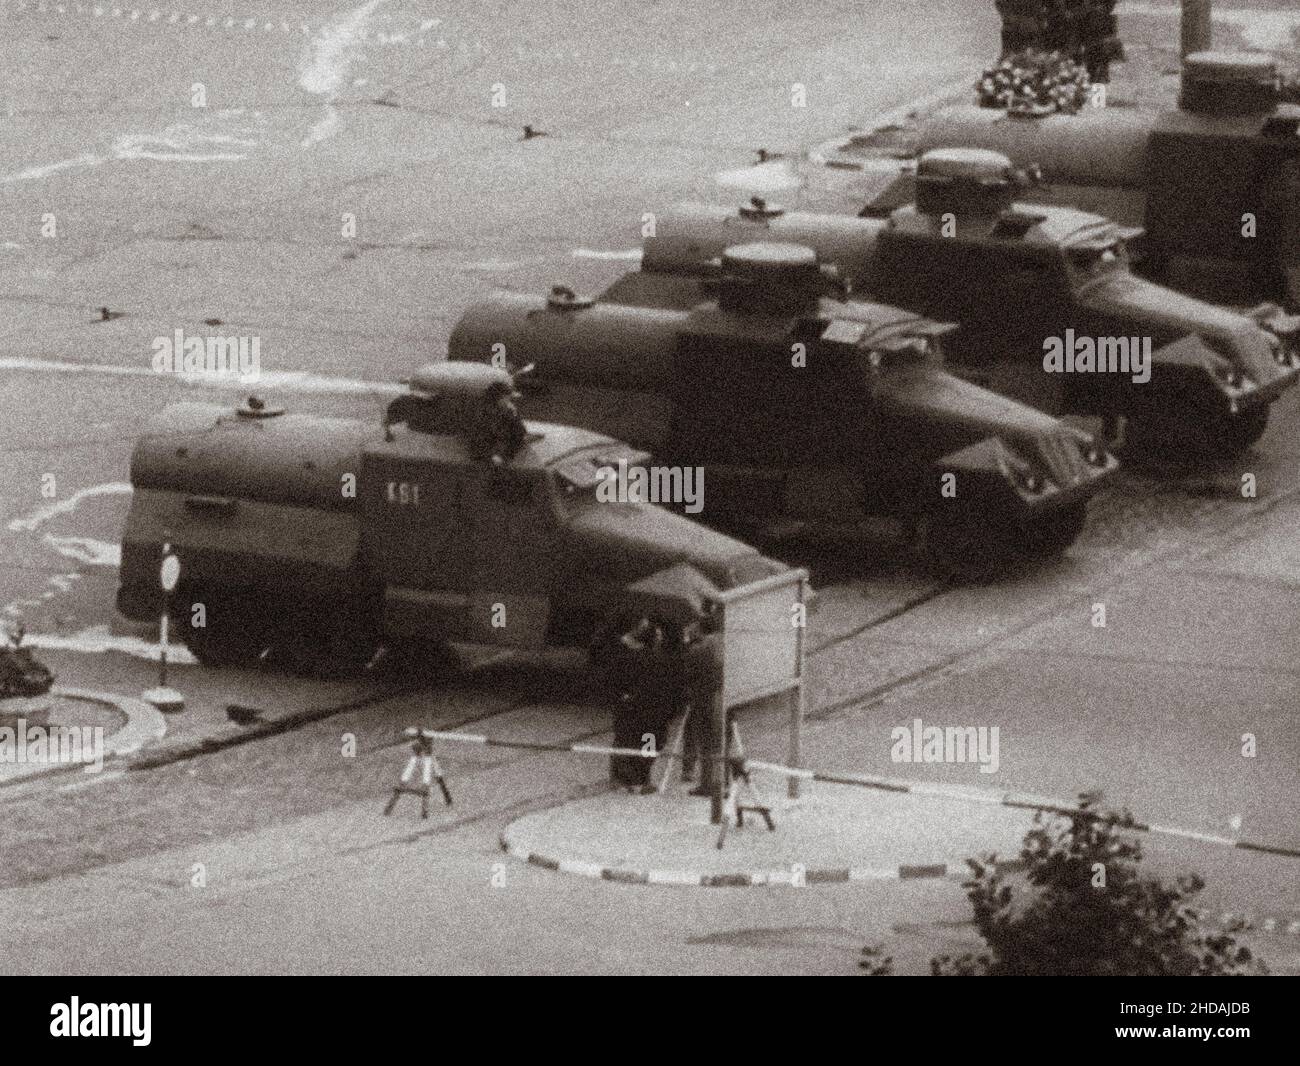 Berliner Krise von 1961. DDR-Patrouillen in der Nähe des Brandenburger Tors. Die Serie der archivel-Fotos zeigt das Reiseverbot zwischen Ost und Wes im August 1961 Stockfoto